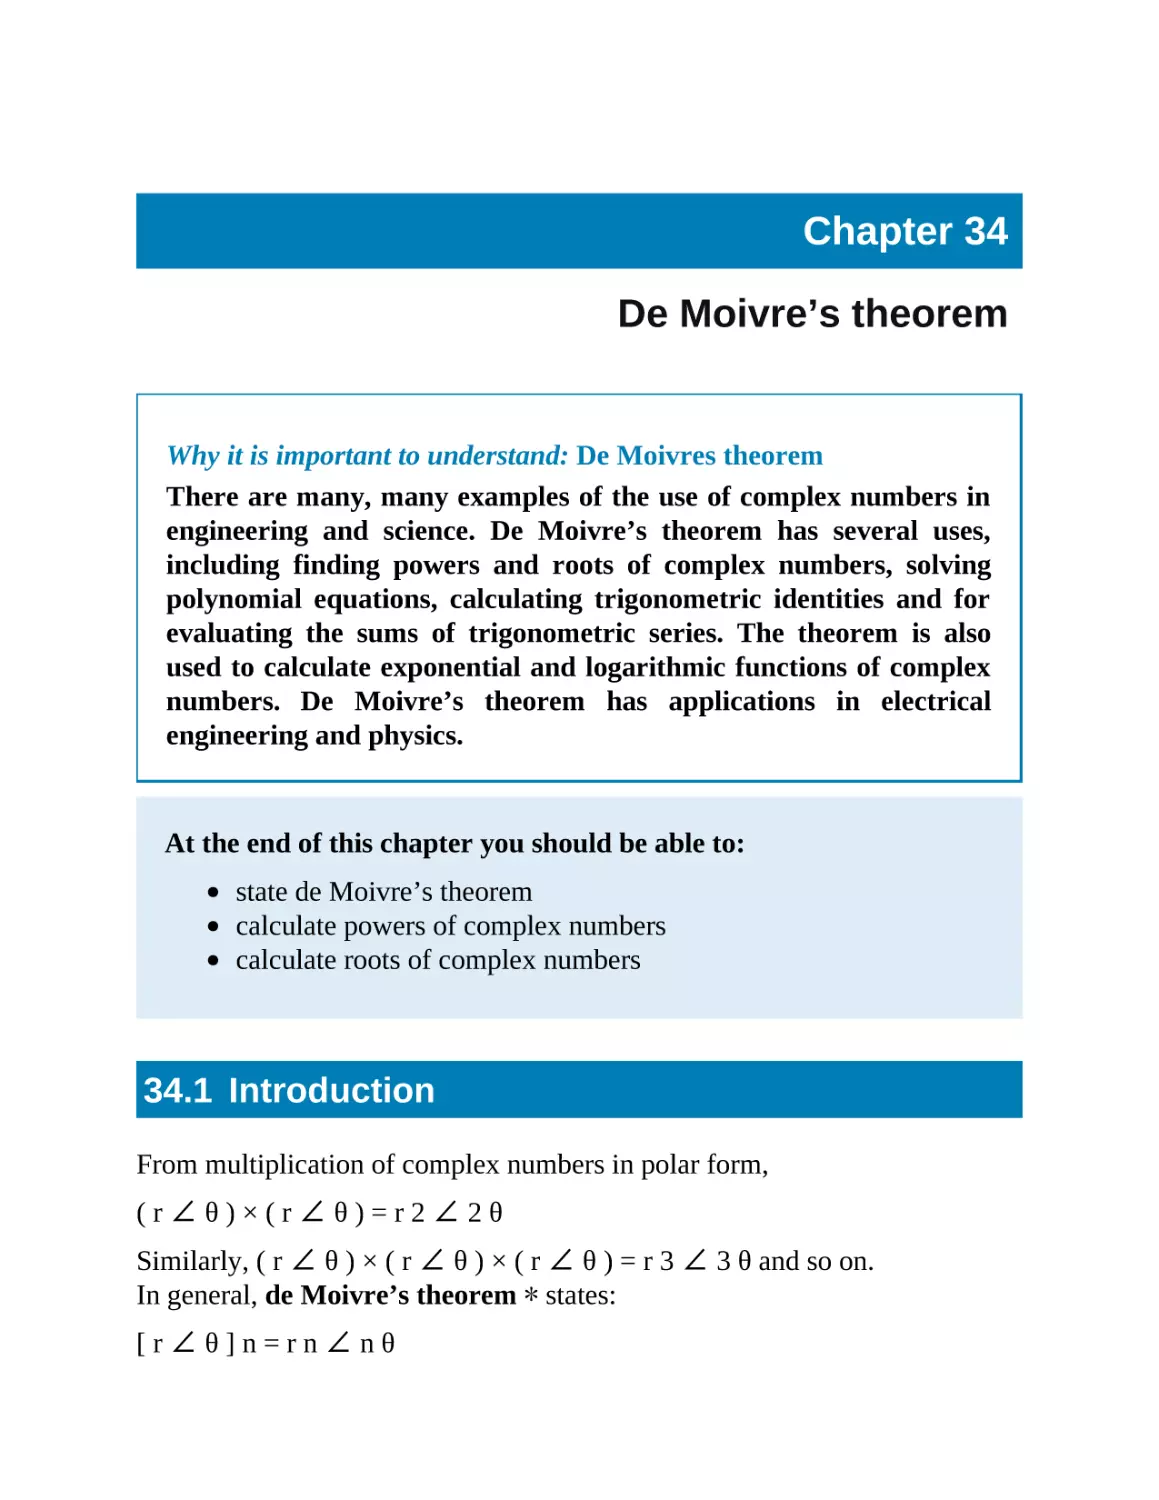 34 De Moivre’s theorem
34.1 Introduction